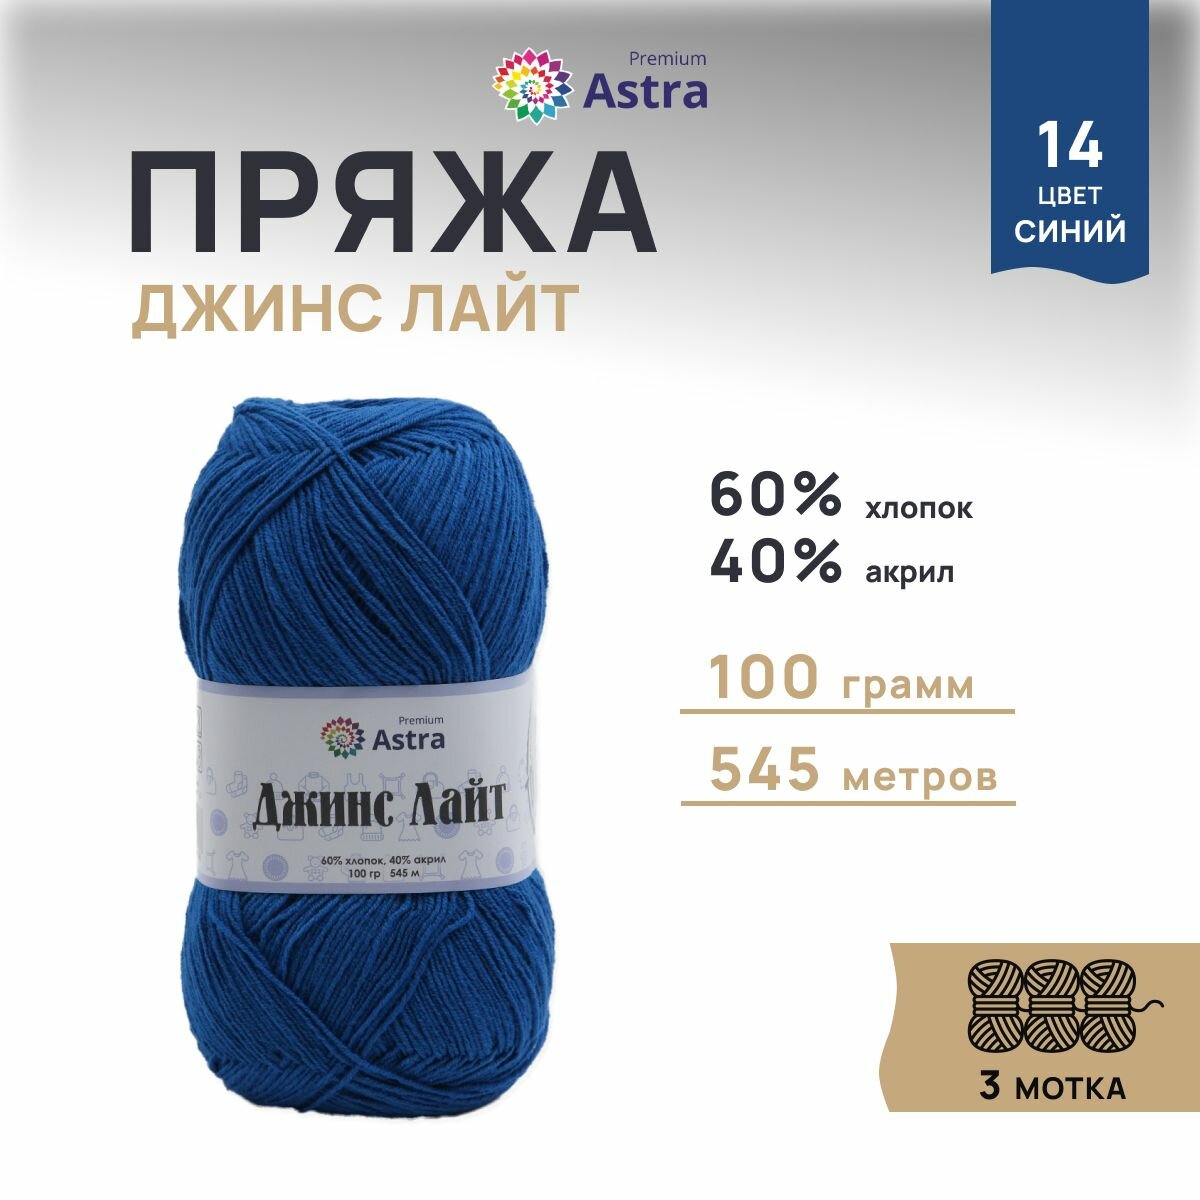 Пряжа для вязания Astra Premium 'Джинс Лайт' (Jeans Light), 100г, 545м (60% хлопок, 40% акрил) (14 синий), 3 мотка